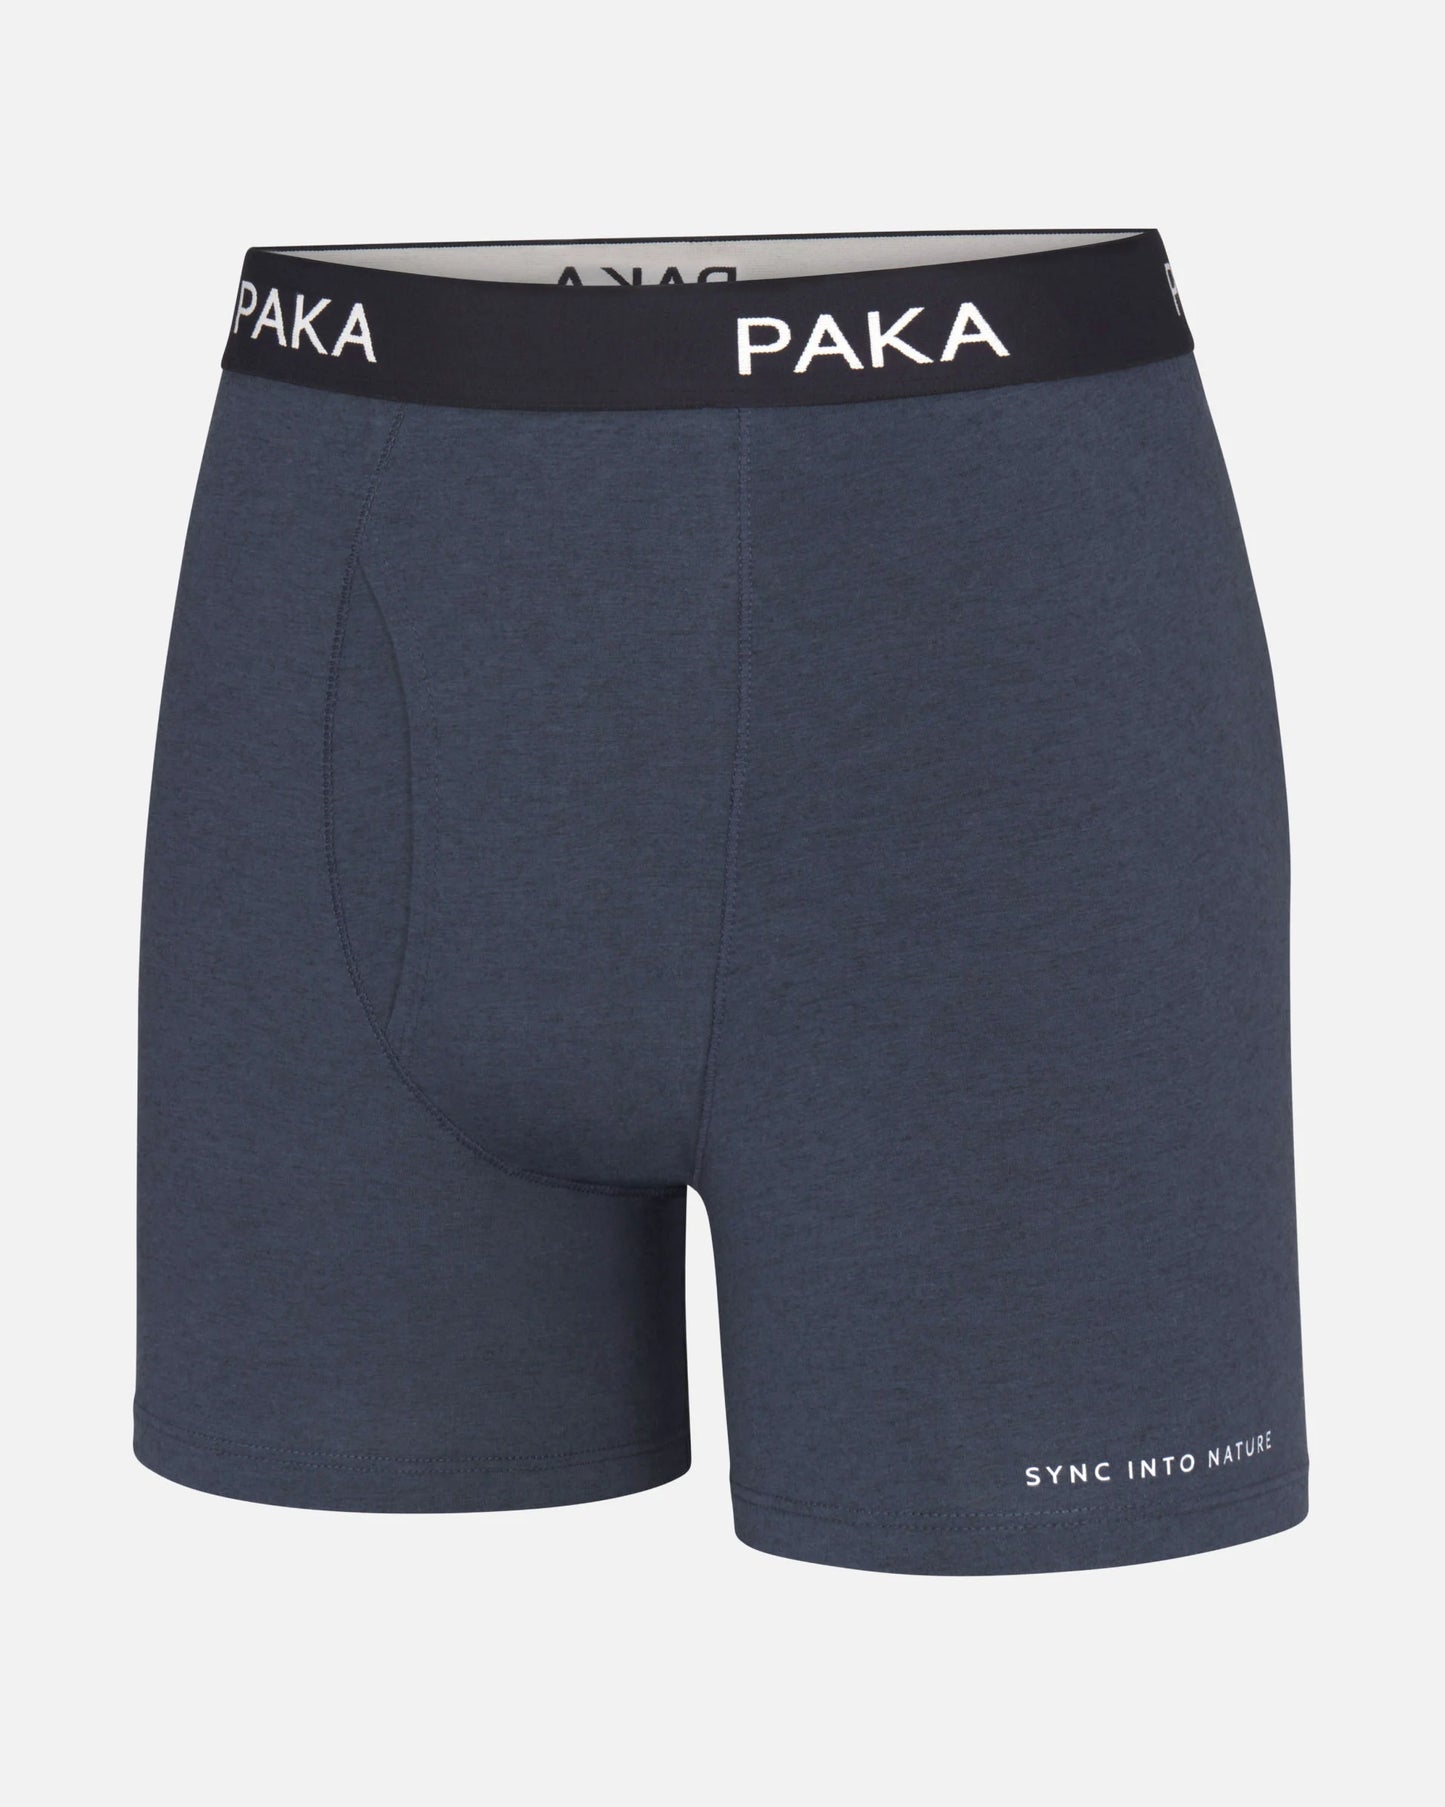 Men's blue alpaca briefs underwear flat lay